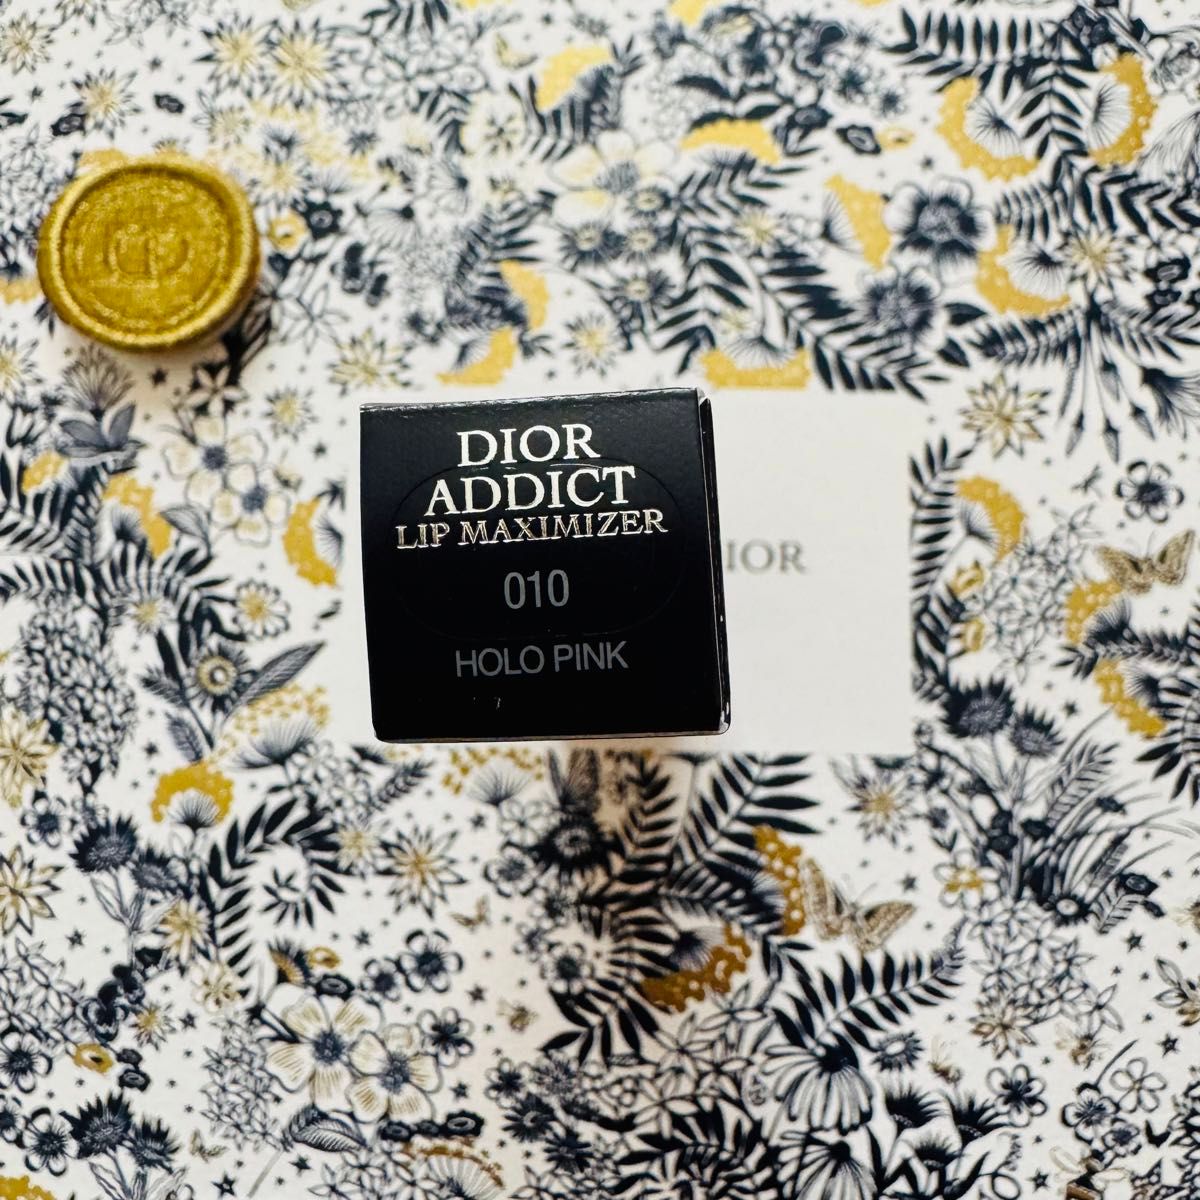 【Dior】アディクト リップ マキシマイザー 010